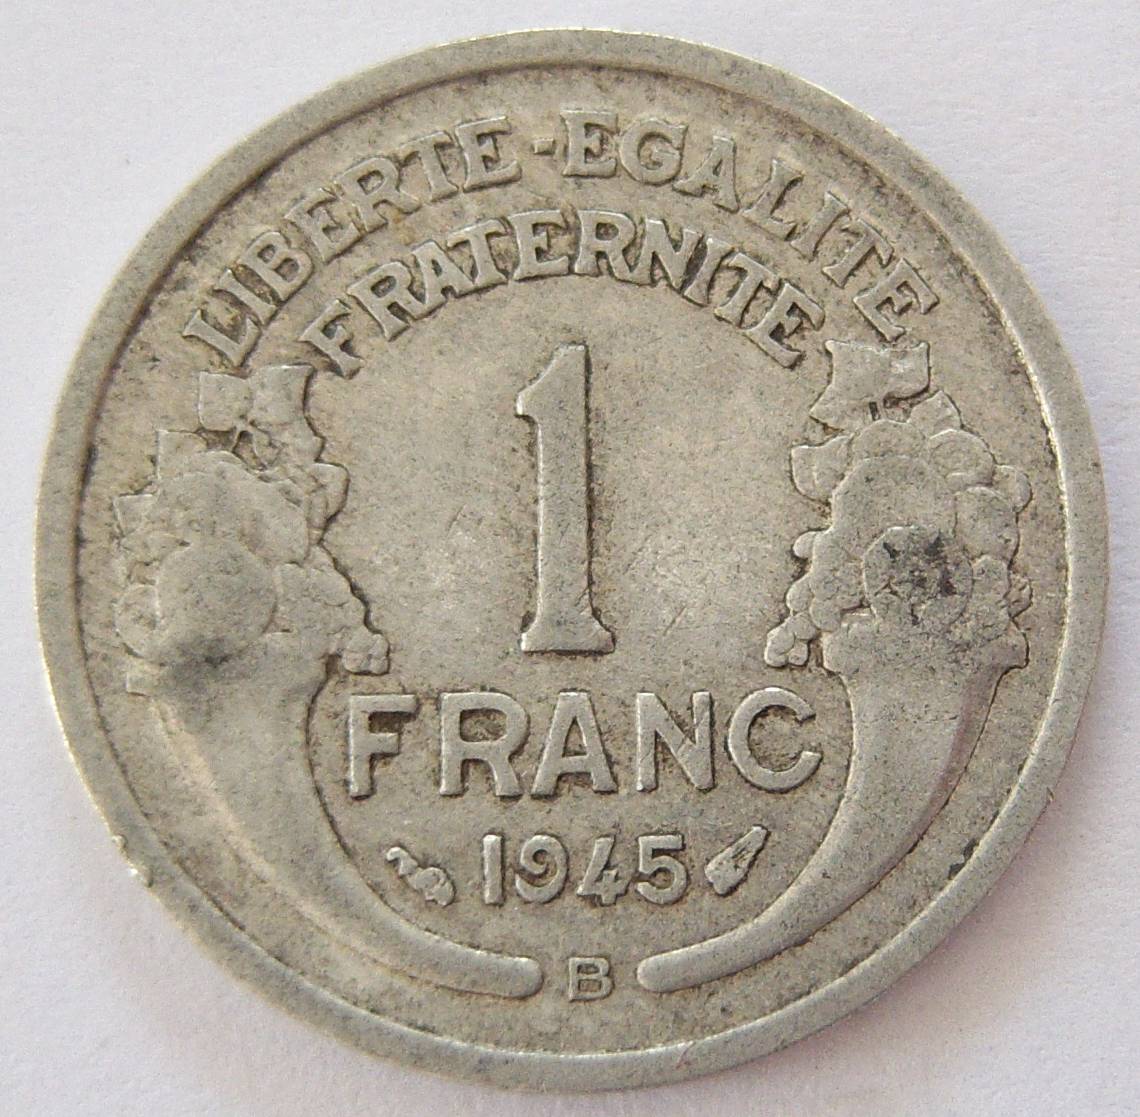  Frankreich 1 Franc 1945 B   